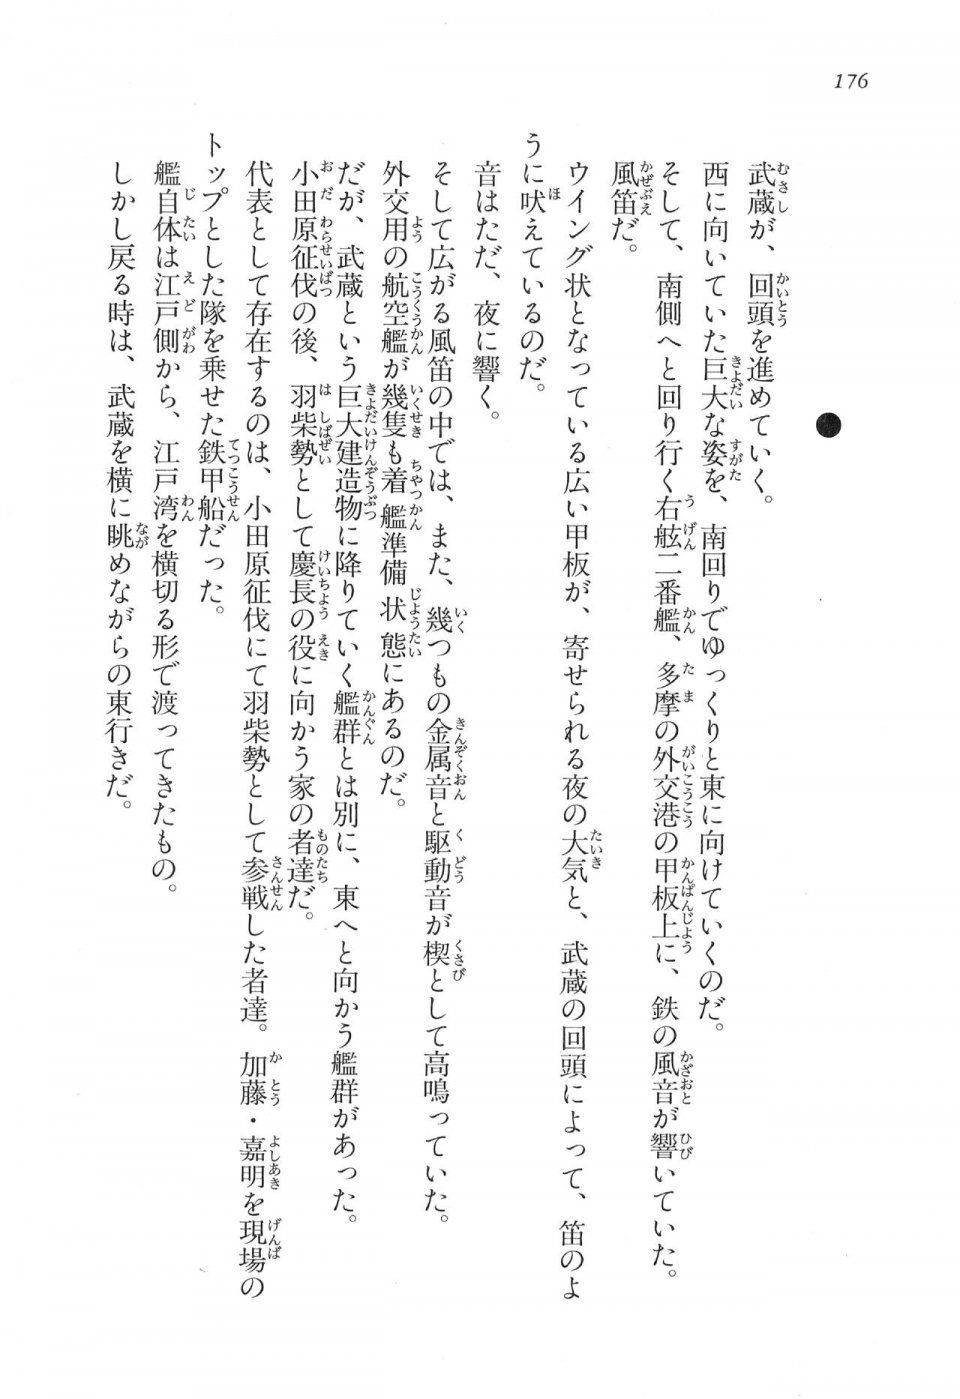 Kyoukai Senjou no Horizon LN Vol 16(7A) - Photo #176